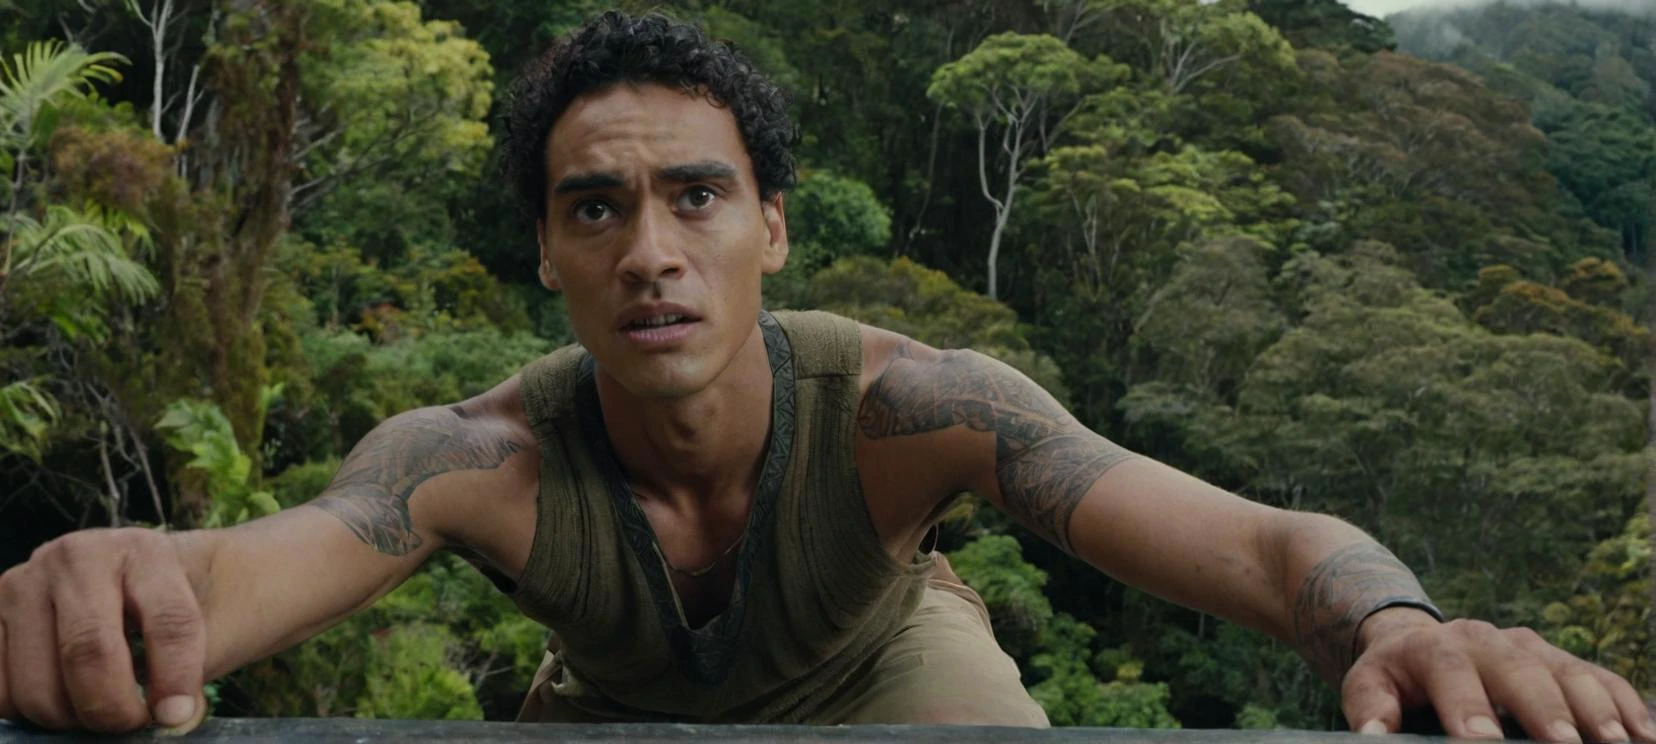 فيلم لا يزال صورة شخصية طويل القامة, شاب, رجل نحيف نصف ماوري على حافة غابة في نيوزيلندا, مع نظرة قلق طفيف على وجهه.



سينمائي, لا يزال الفيلم